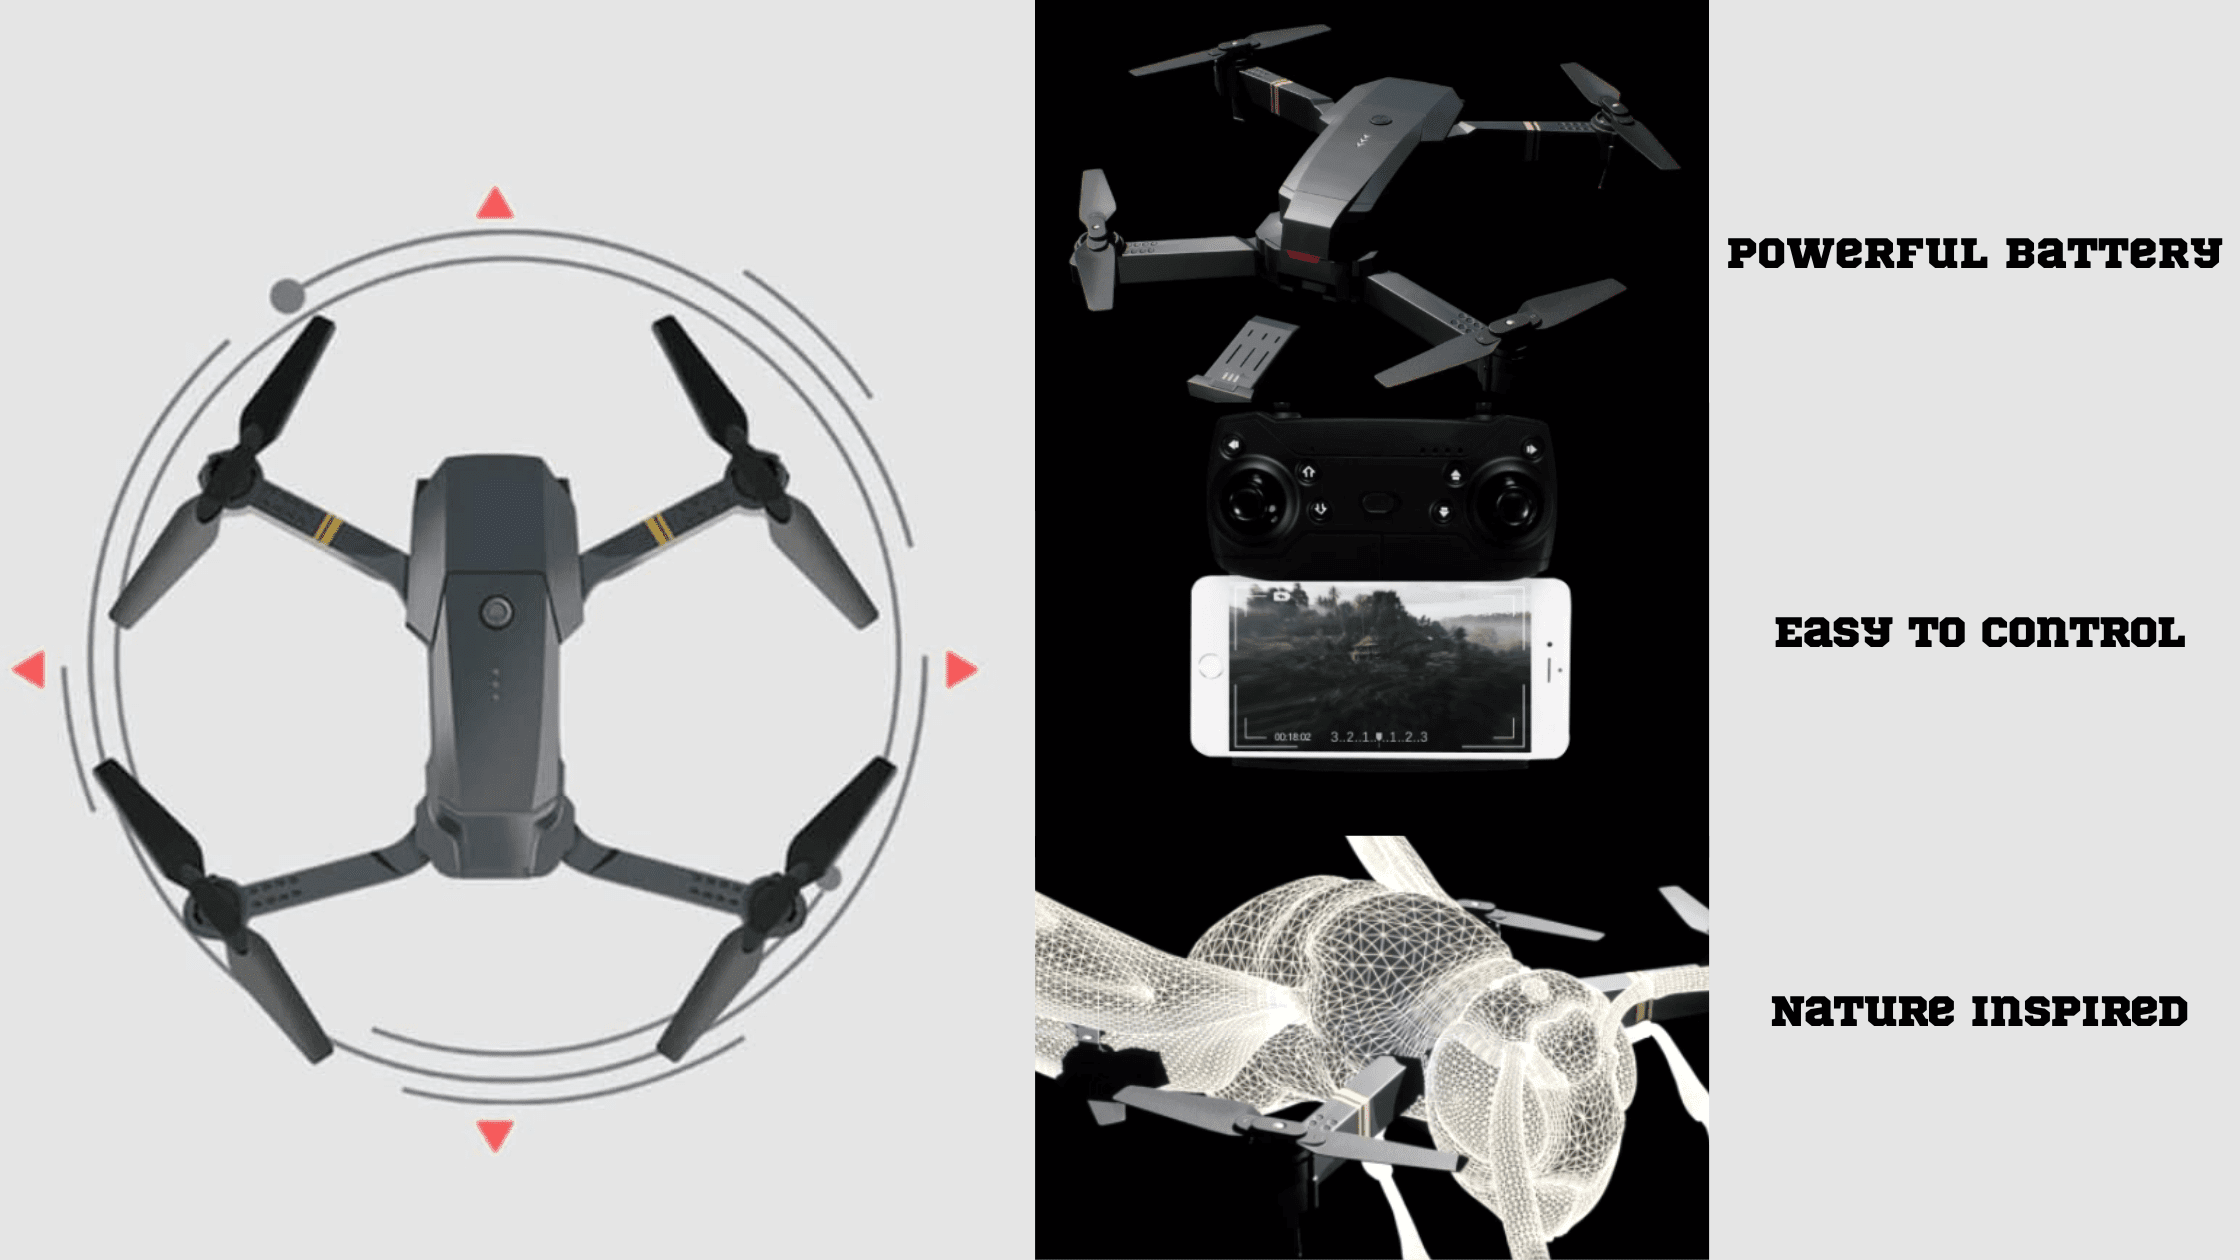 QuadAir Drone Features